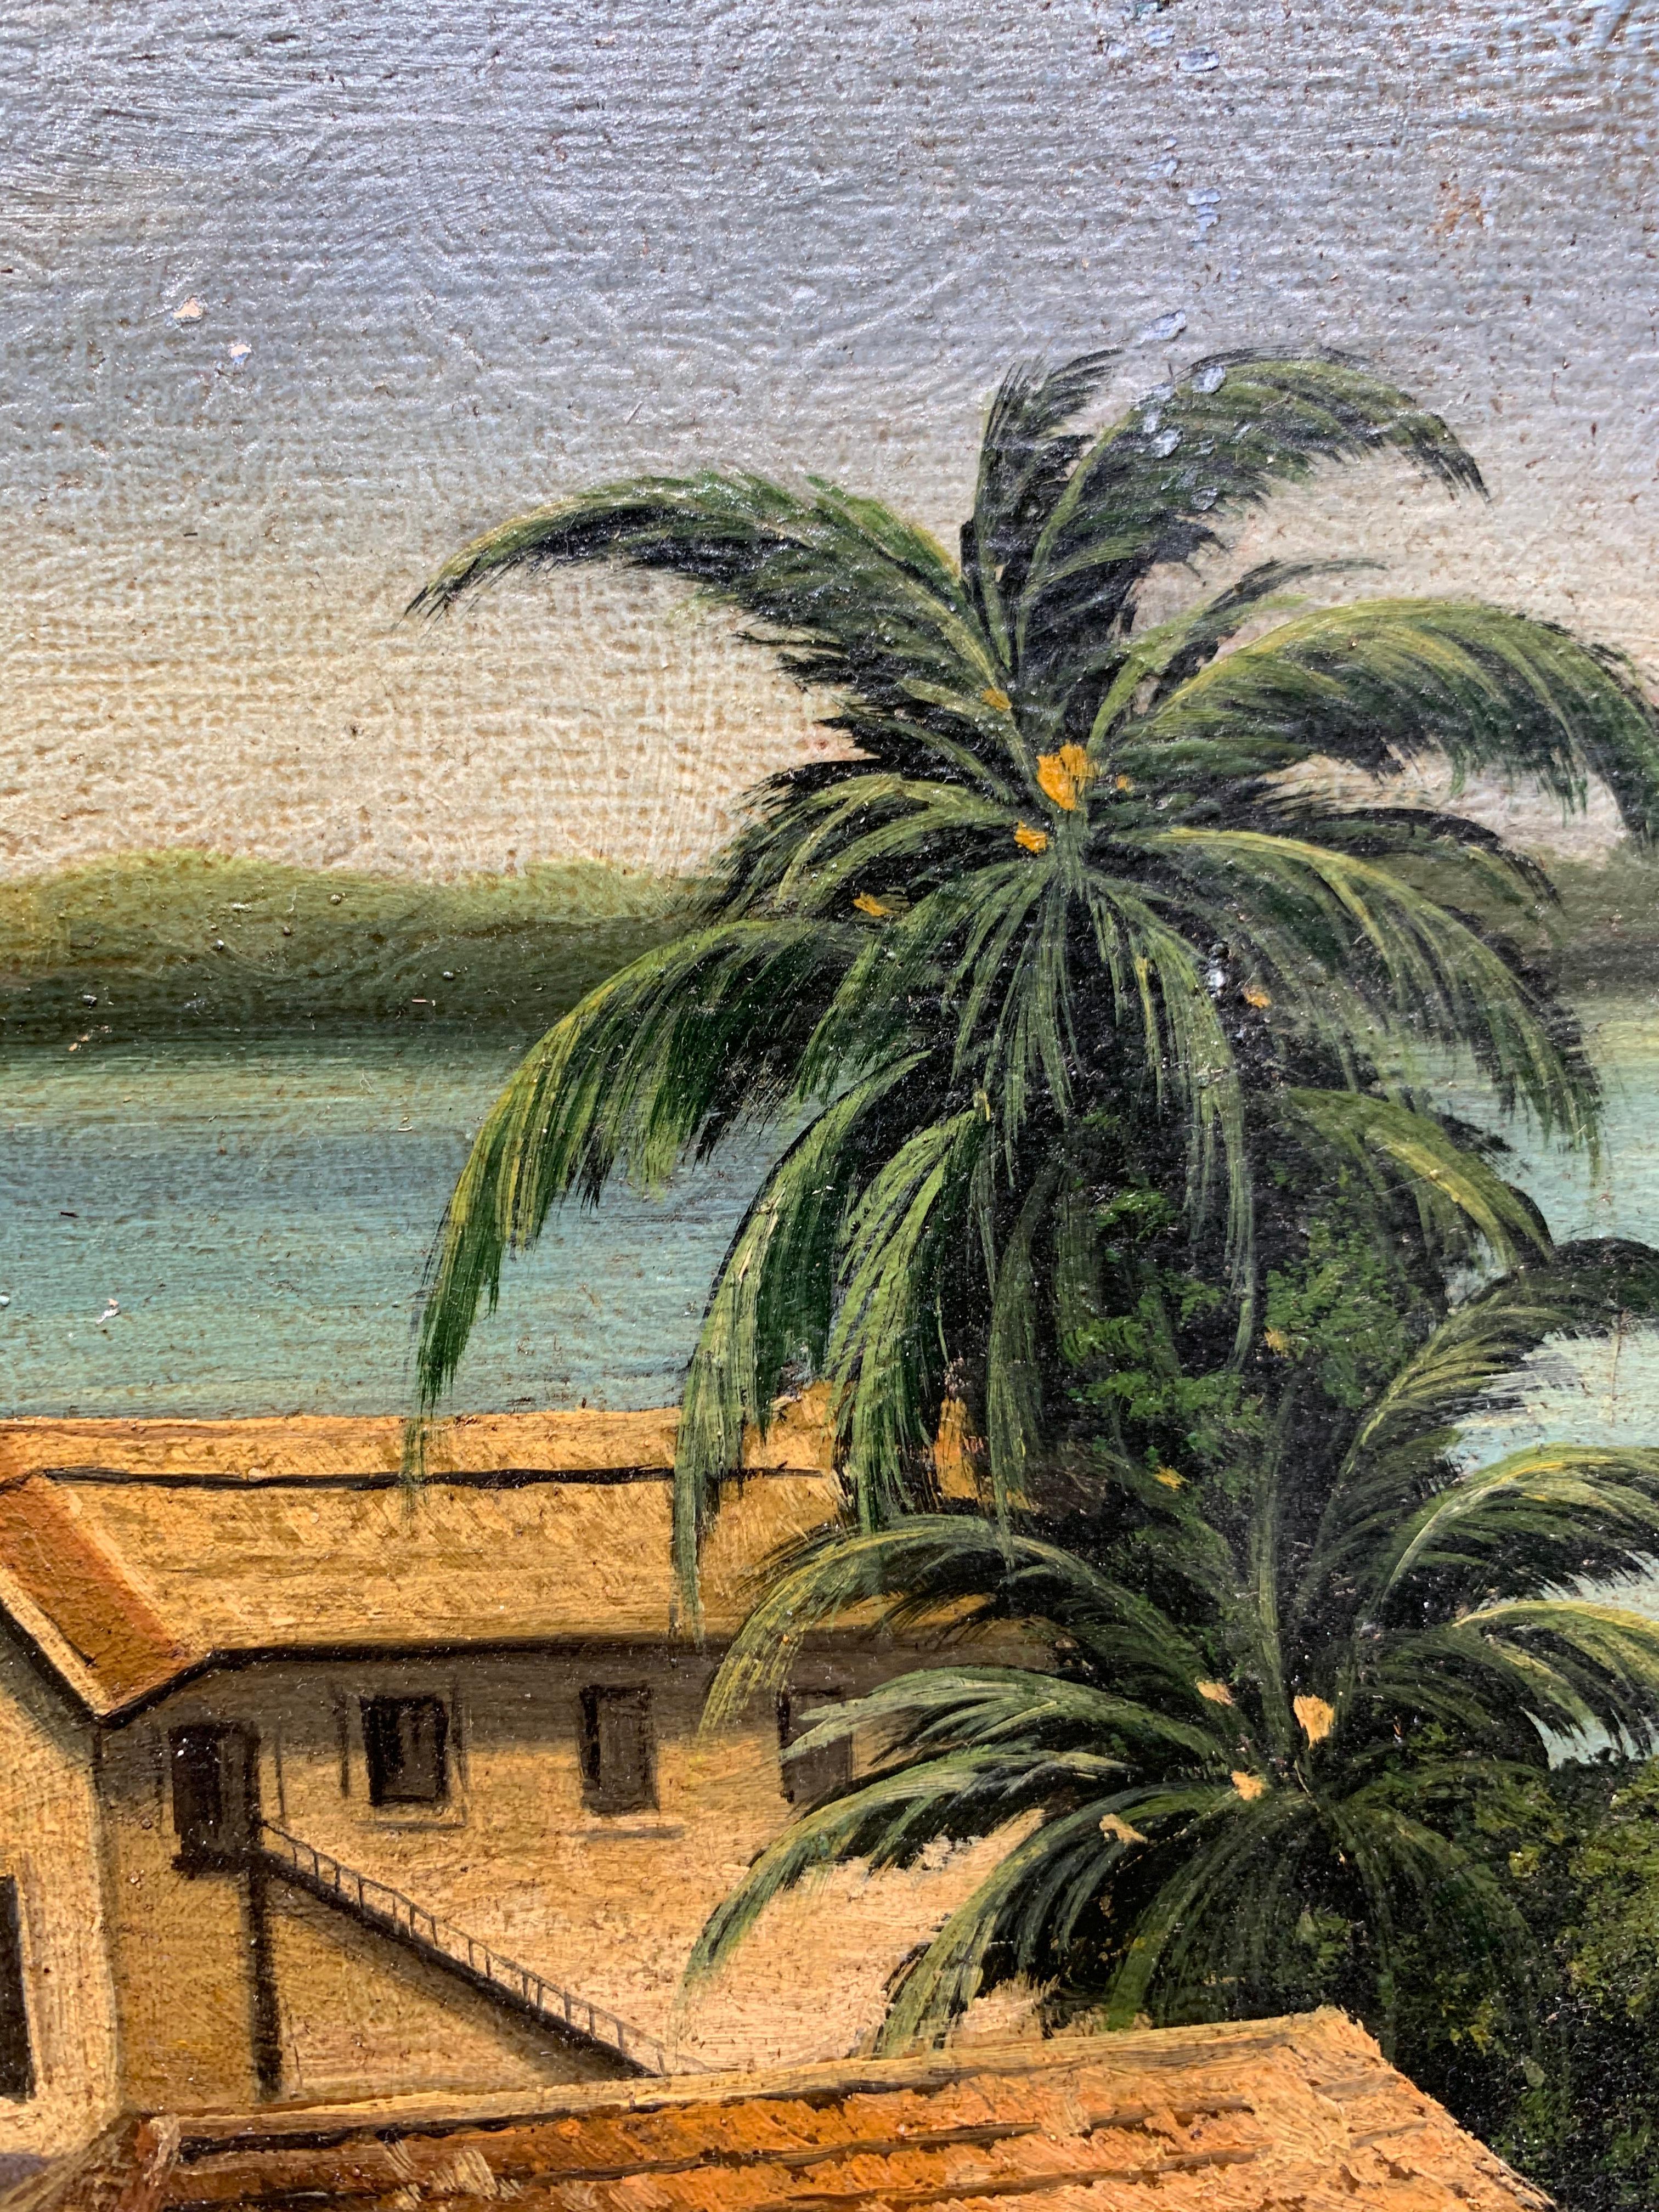 Magnifique paysage de jeunesse de l'artiste américain Will Howe Foote (1874-1965). Paysage des Bermudes, vers 1890-95. Huile sur panneau de carton texturé, mesure 14 x 18 pouces. Label d'attribution original apposé au verso. L'œuvre n'est pas